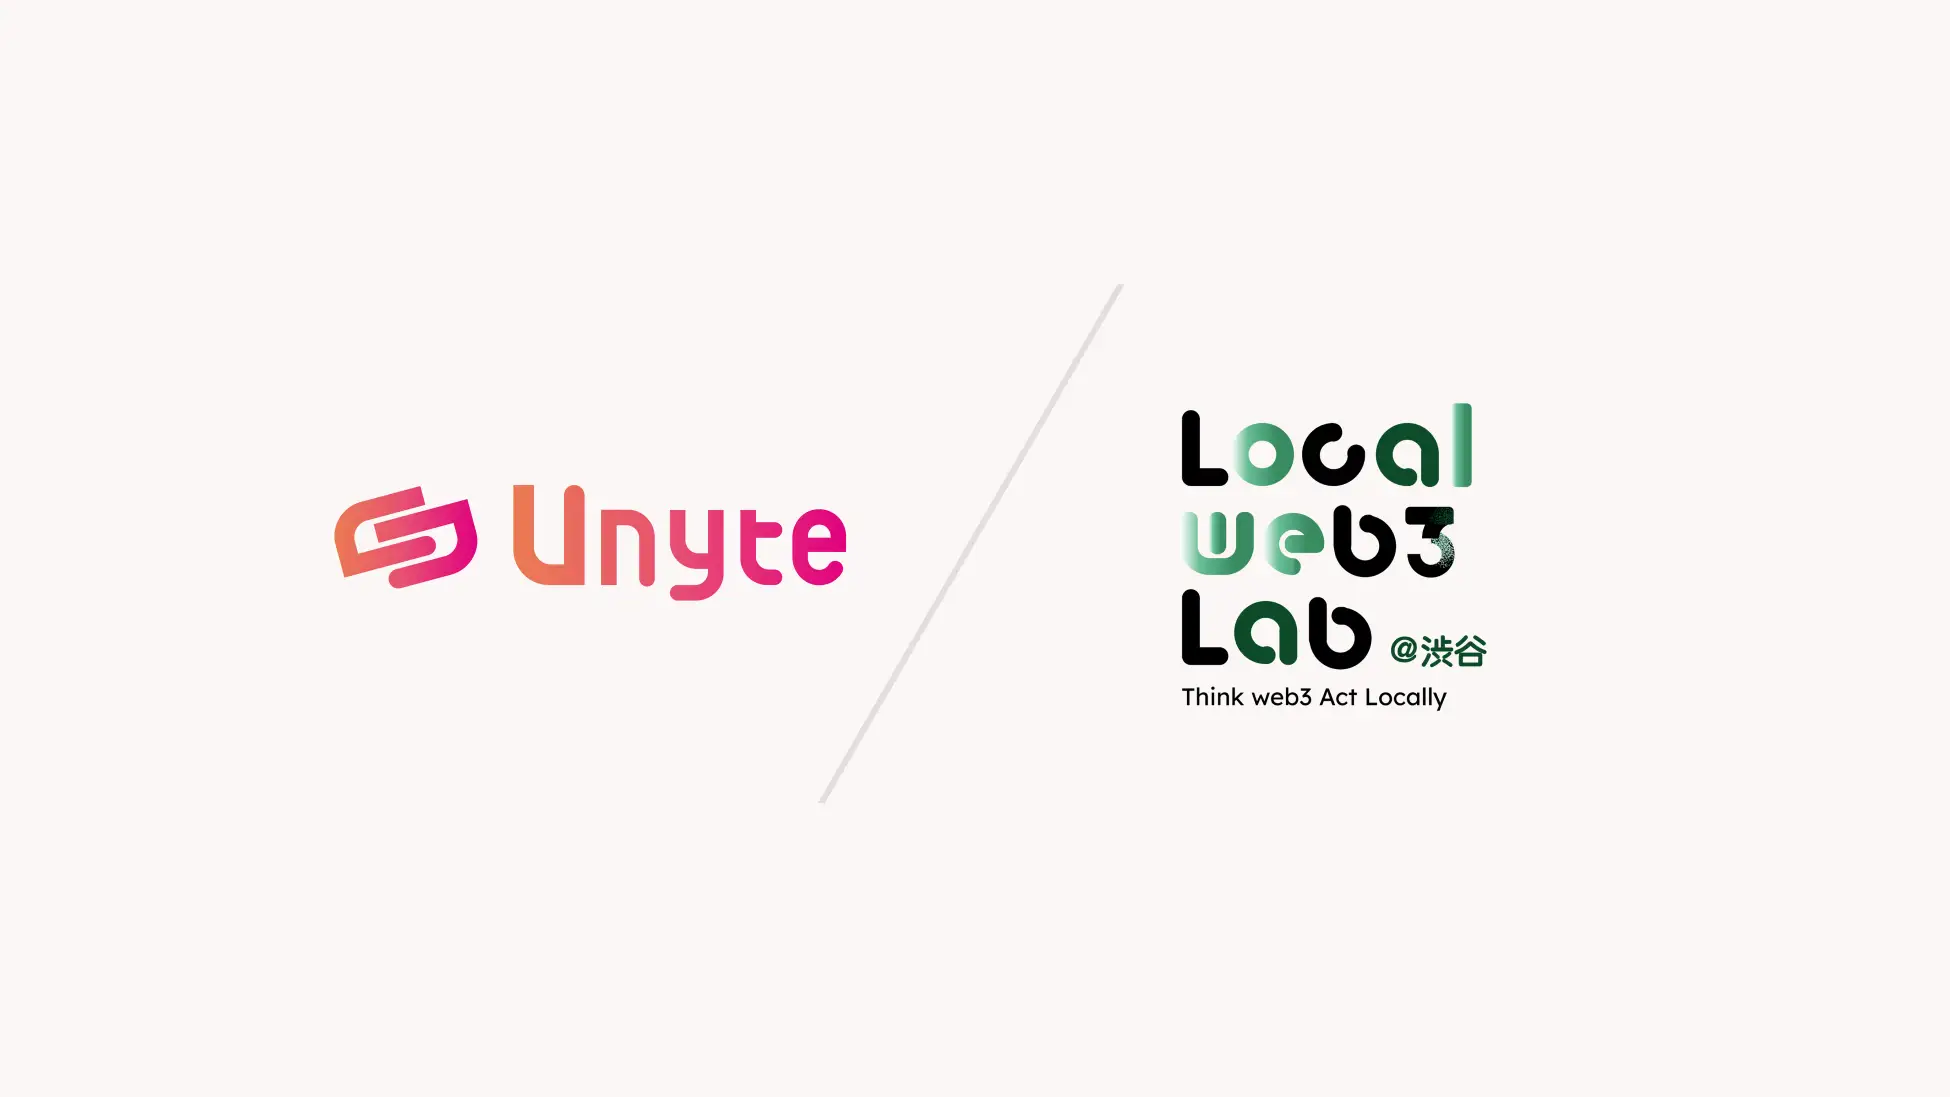 DAOの構築・管理のための統合プラットフォームUnyte、東急不動産ホールディングスおよびMeTownが共同で開始する地域課題解決プロジェクト「Local web3 Lab.@渋谷」への導入が決定